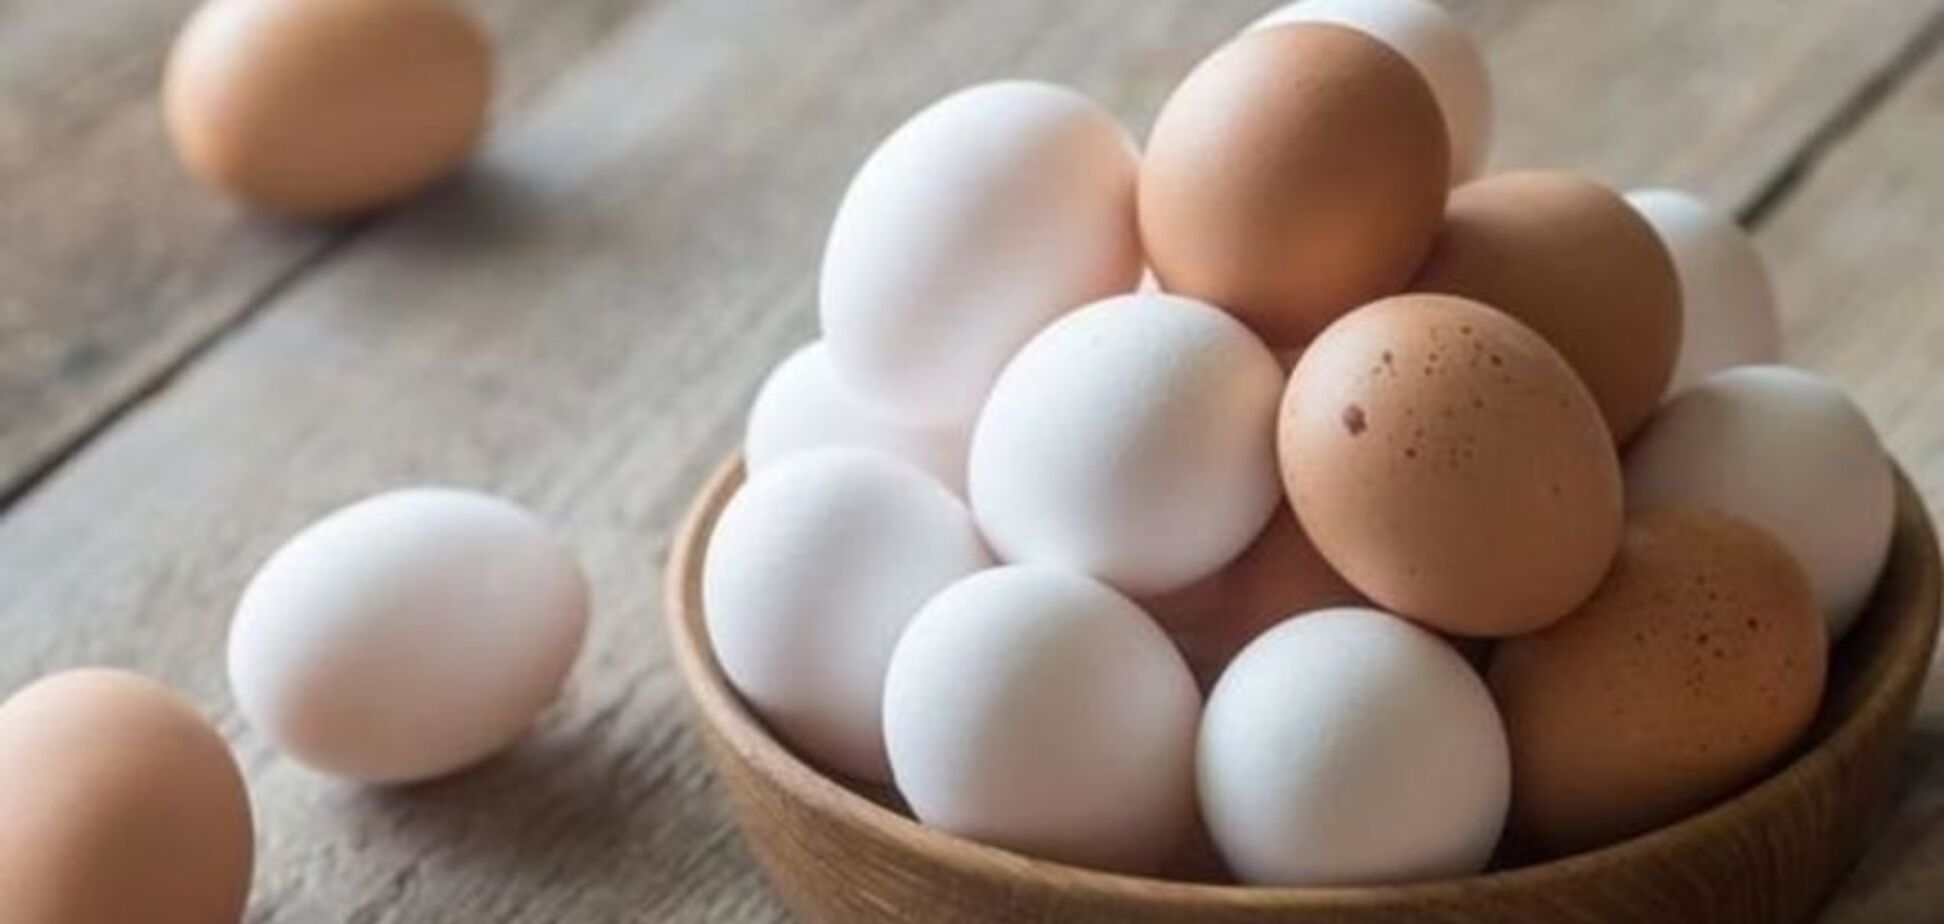 Производство яиц в Украине за первые два месяца 2021 упало на 16,1% по сравнению с аналогичным периодом 2020